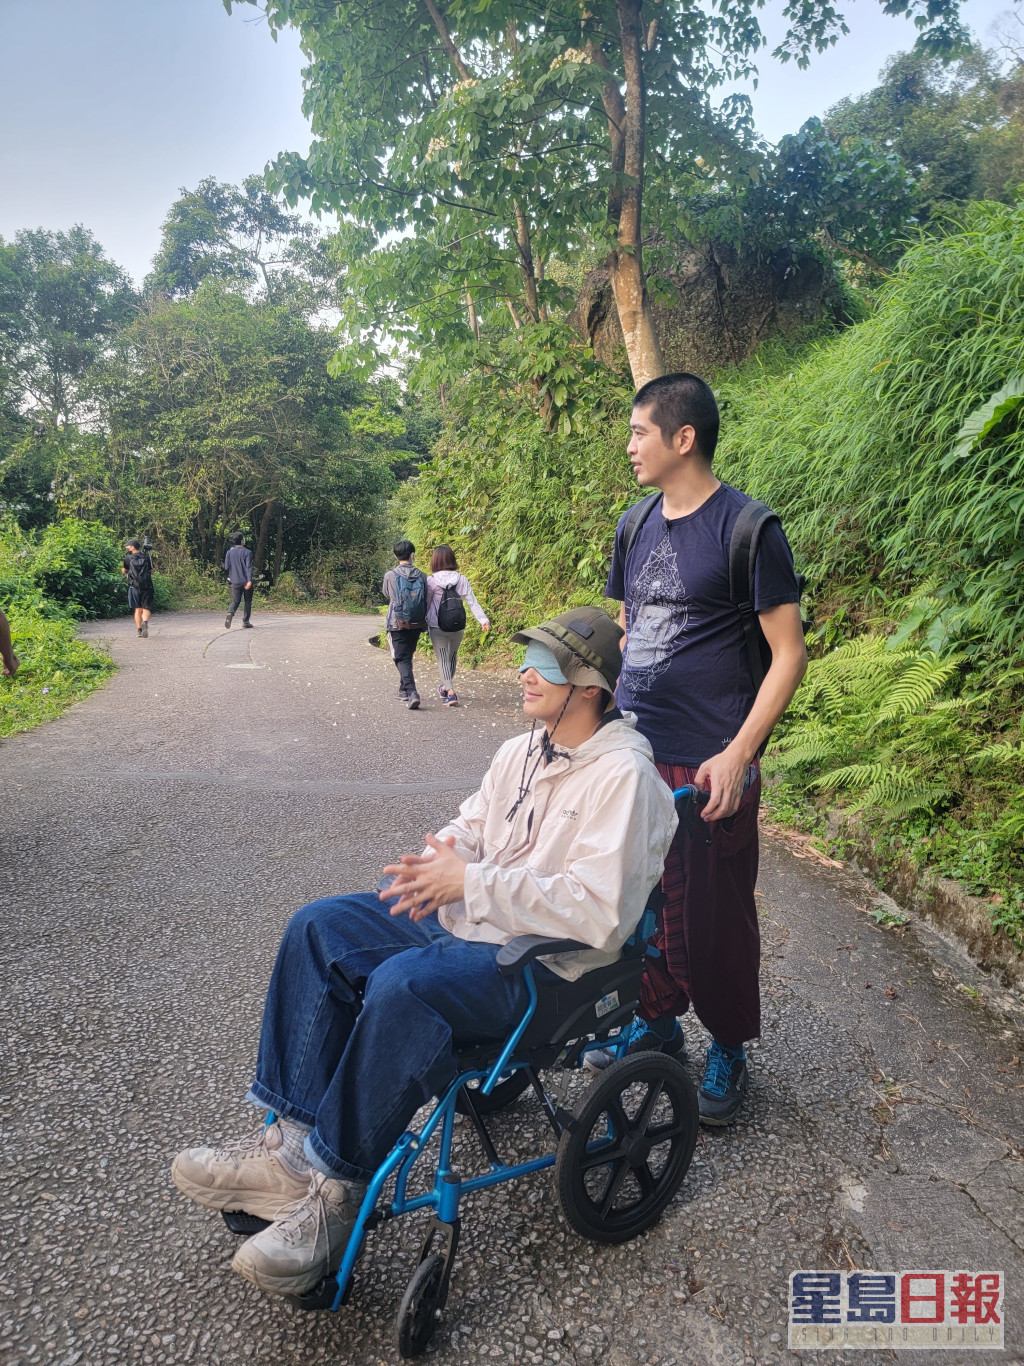 6号＠RubberBand蒙眼坐上轮椅，体验模拟衰老过程。